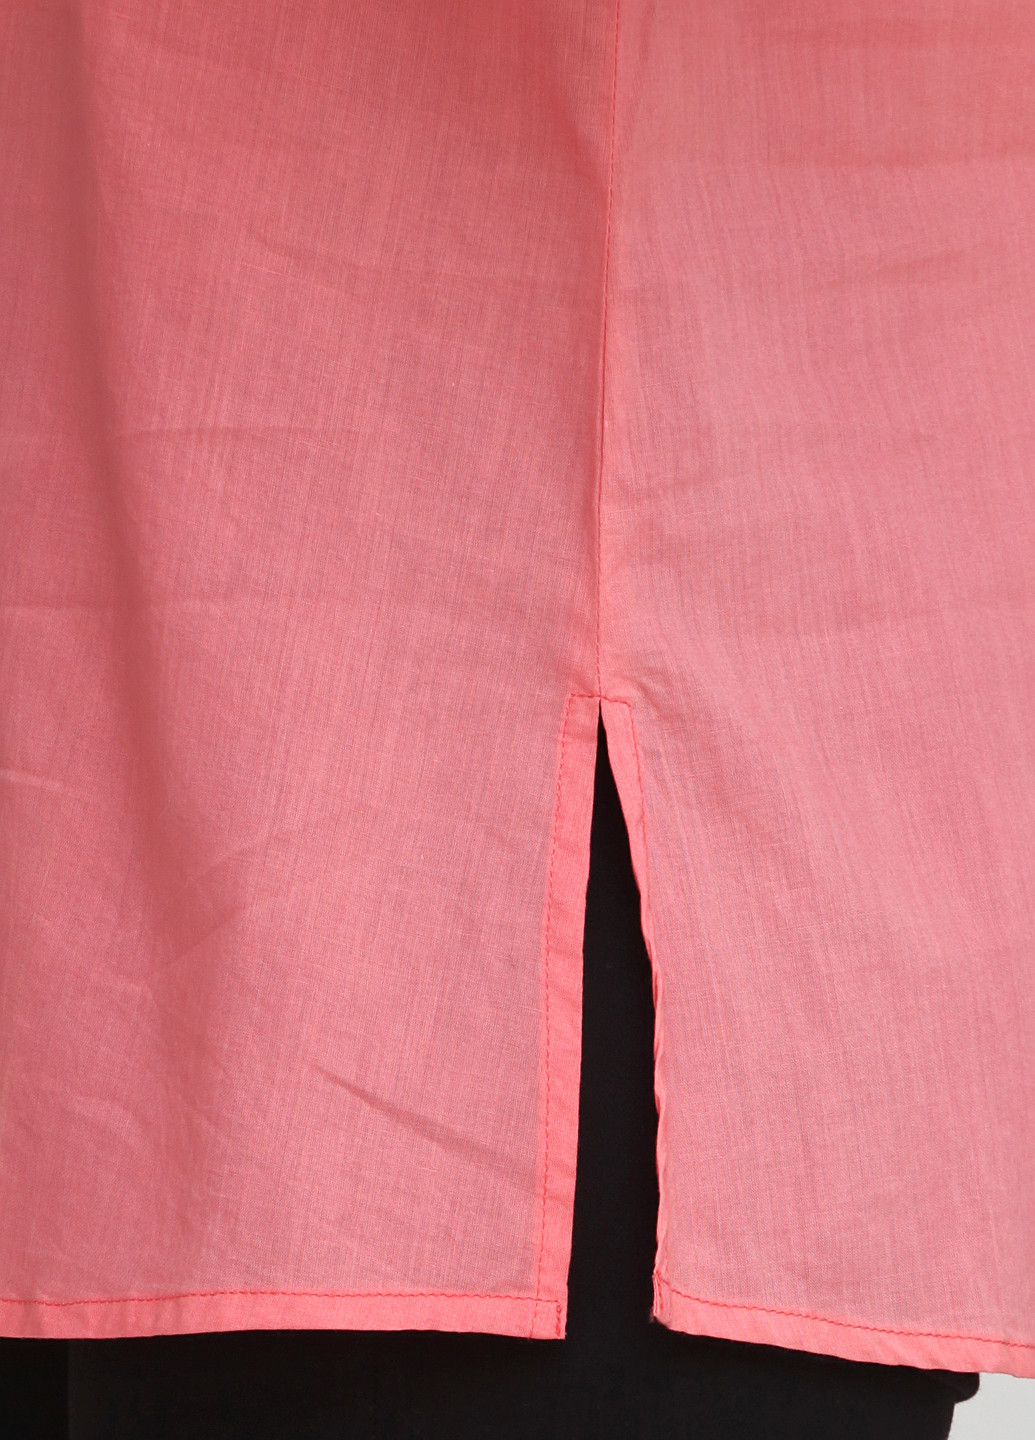 Розовая блуза Sirup